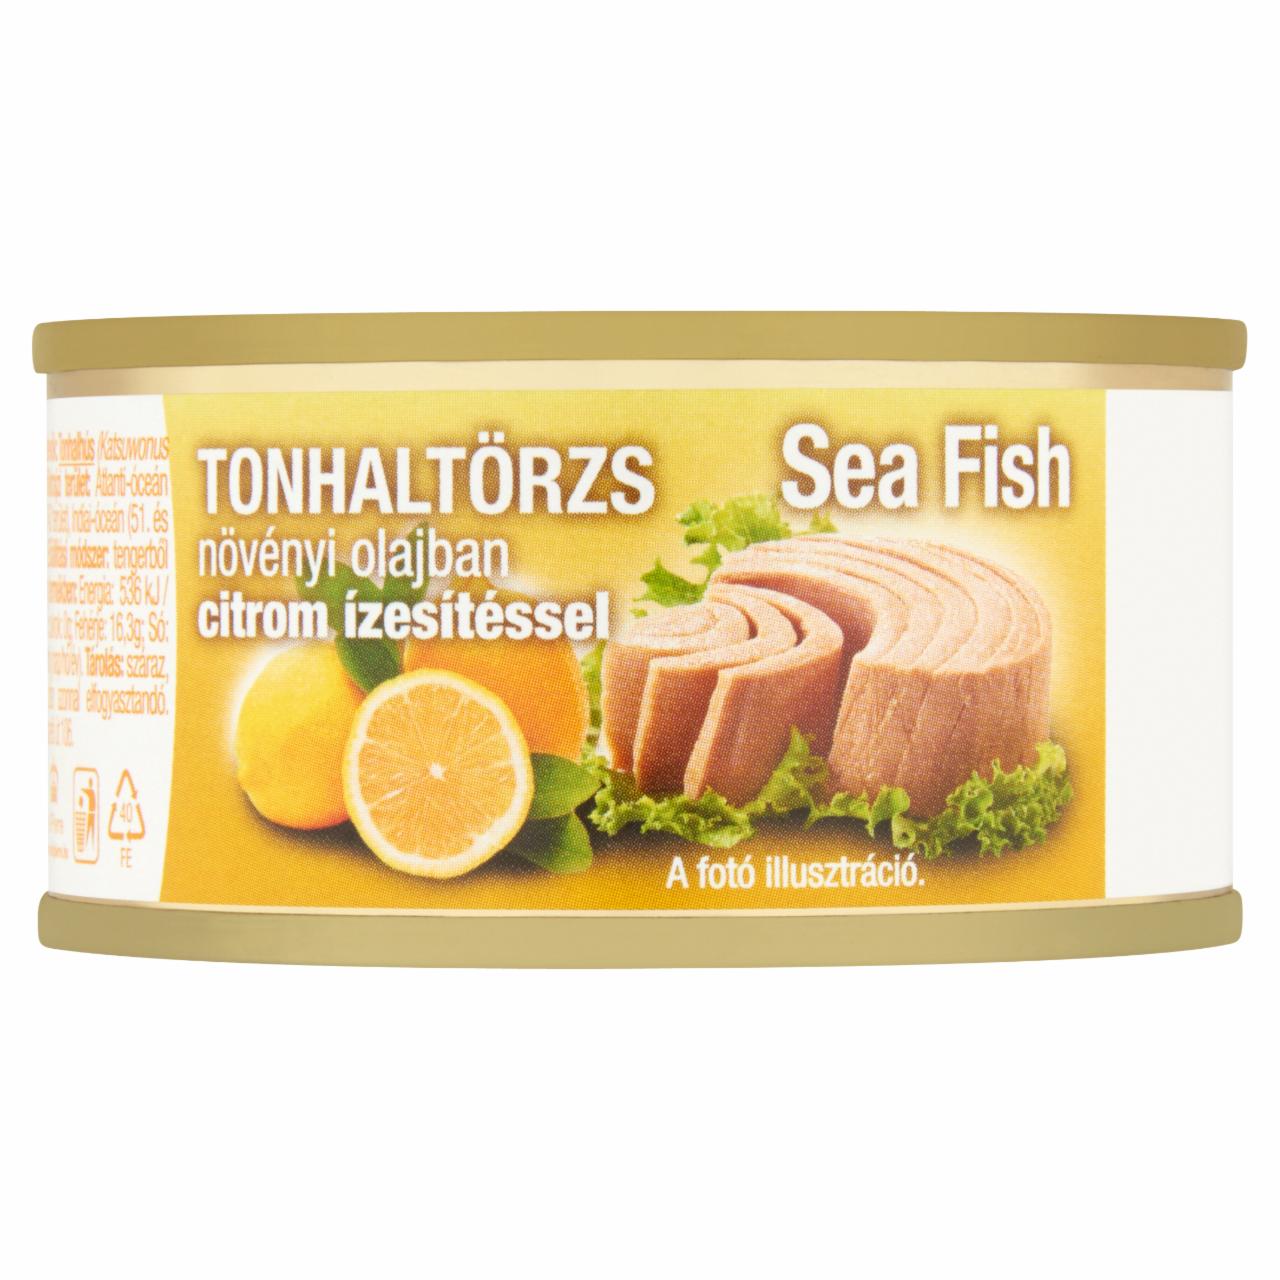 Képek - Sea Fish tonhaltörzs növényi olajban citrom ízesítéssel 80 g